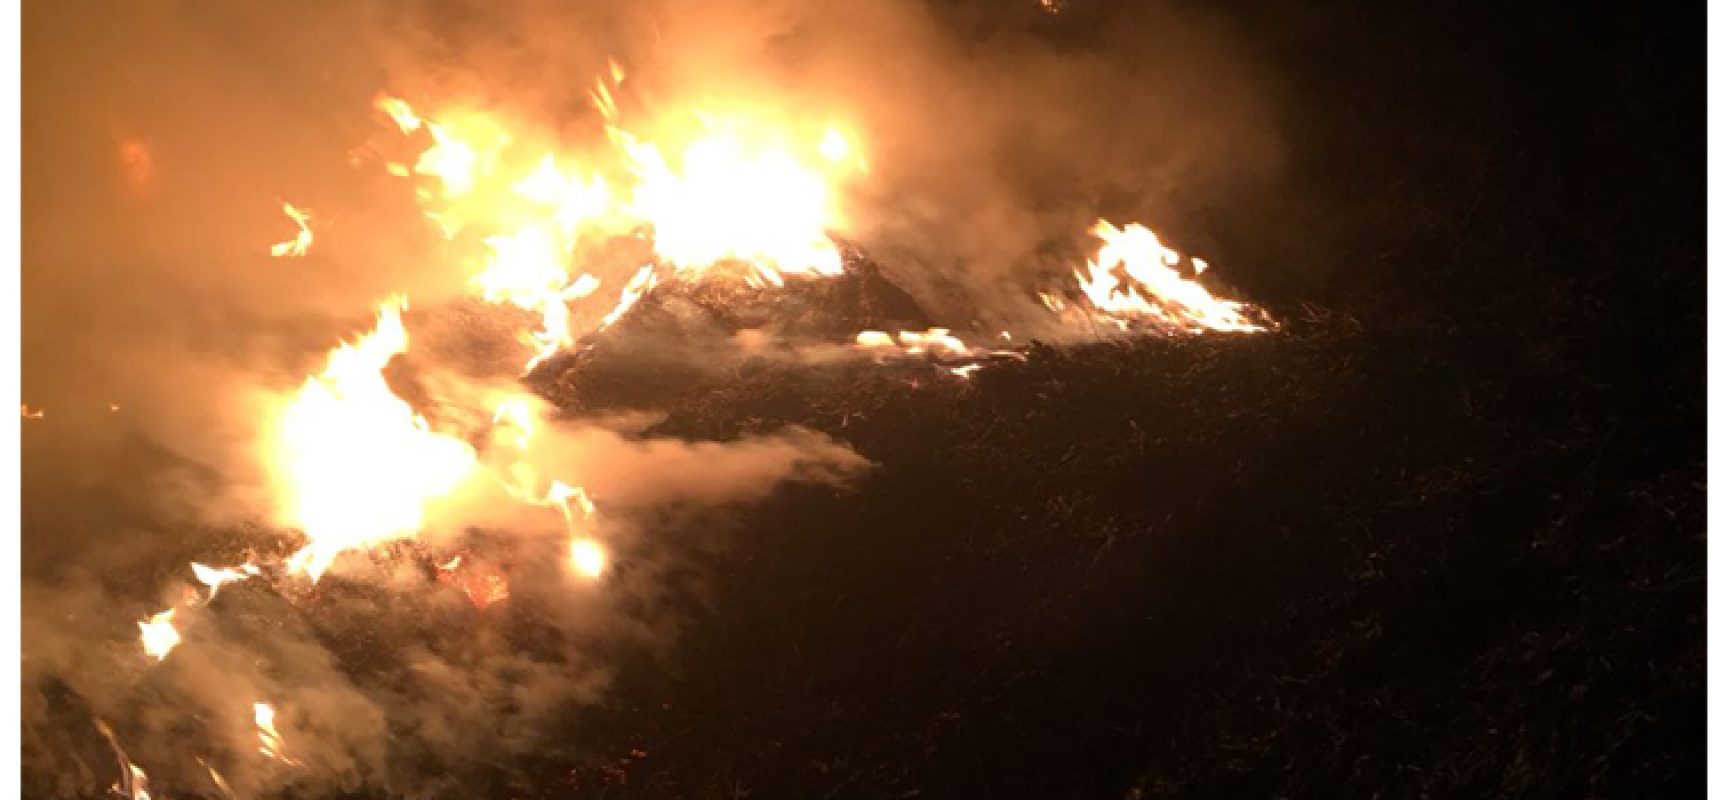 Incendio in via Andria, fumo si propaga in diverse zone della città / FOTO